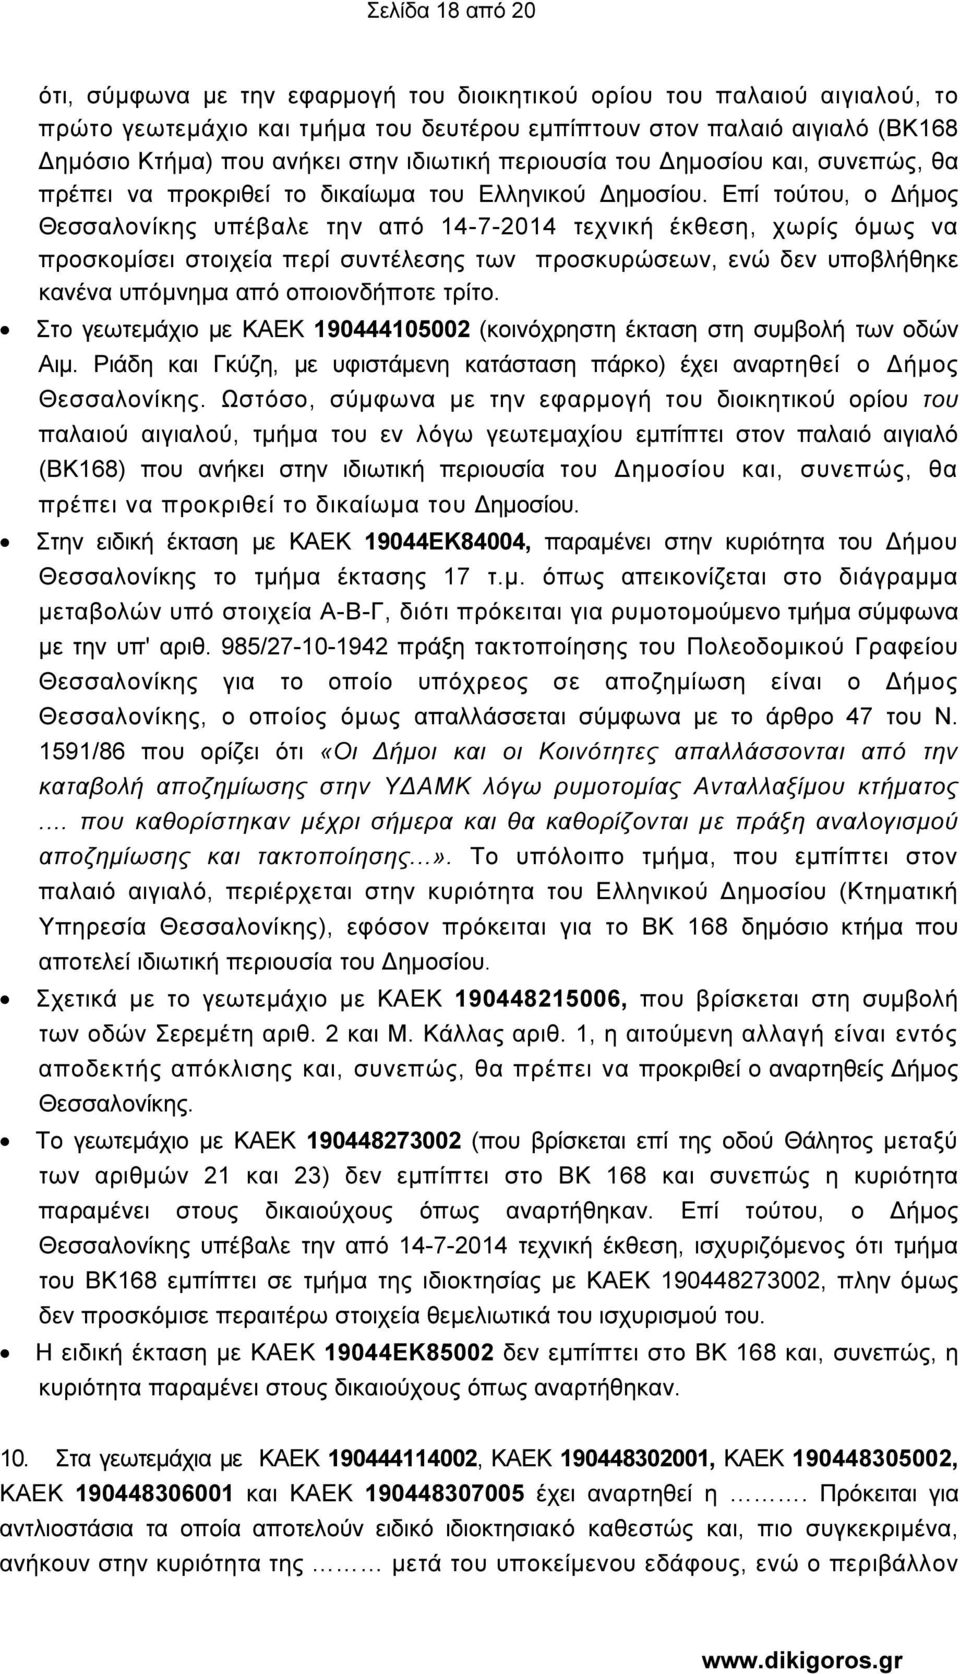 Επί τούτου, ο ήµος Θεσσαλονίκης υπέβαλε την από 14-7-2014 τεχνική έκθεση, χωρίς όµως να προσκοµίσει στοιχεία περί συντέλεσης των προσκυρώσεων, ενώ δεν υποβλήθηκε κανένα υπόµνηµα από οποιονδήποτε